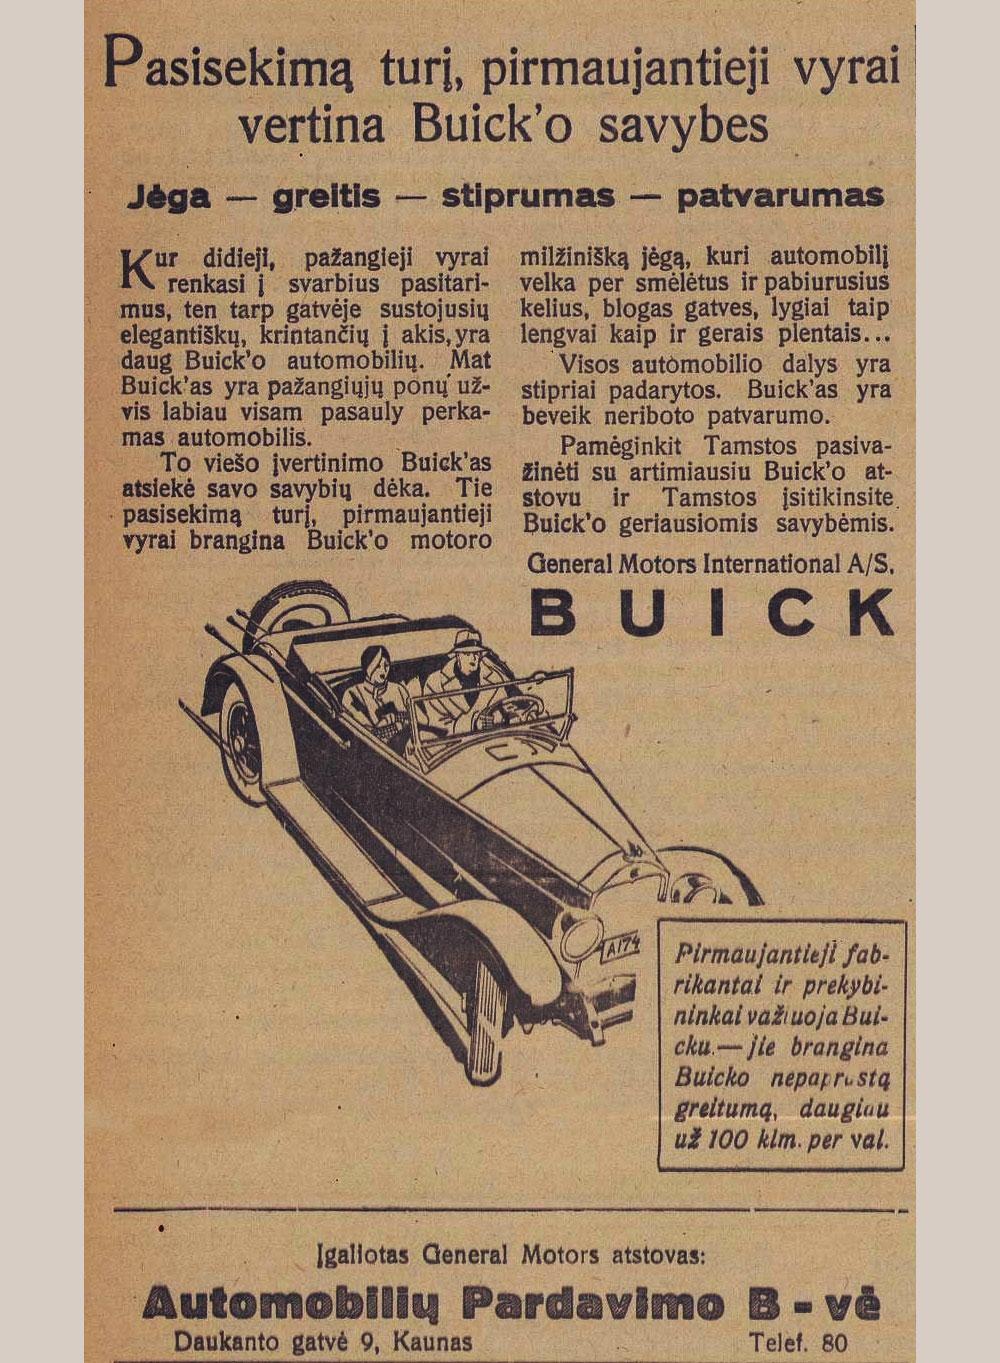 Pasisekimą turį, pirmaujantieji vyrai vertina „Buicko“ savybes